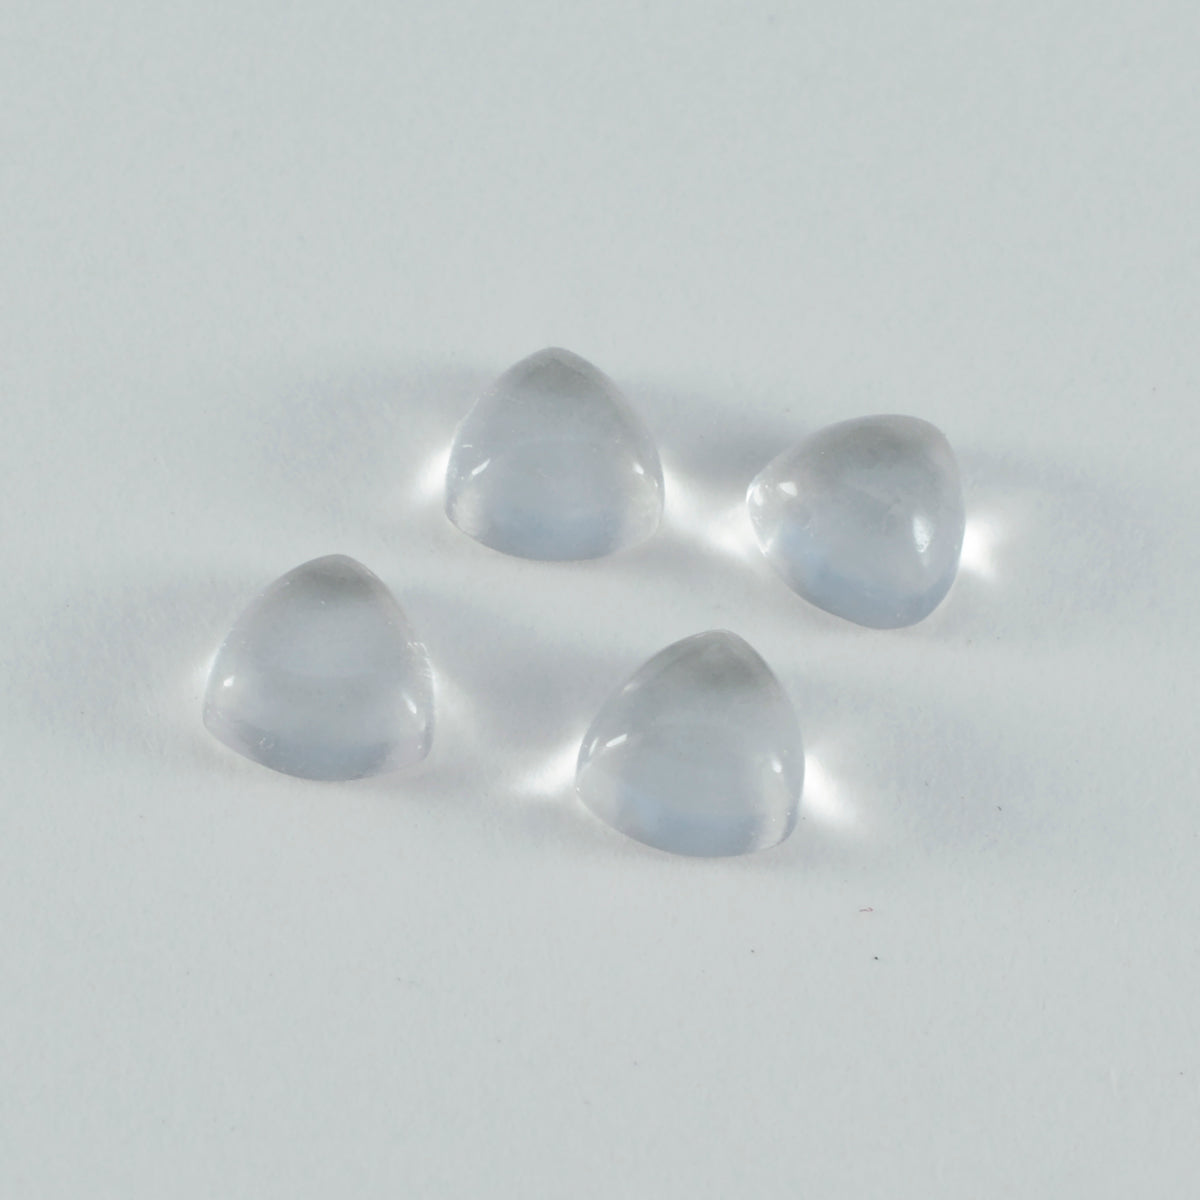 riyogems 1 шт. белый кристалл кварца кабошон 7x7 мм триллионная форма драгоценные камни потрясающего качества